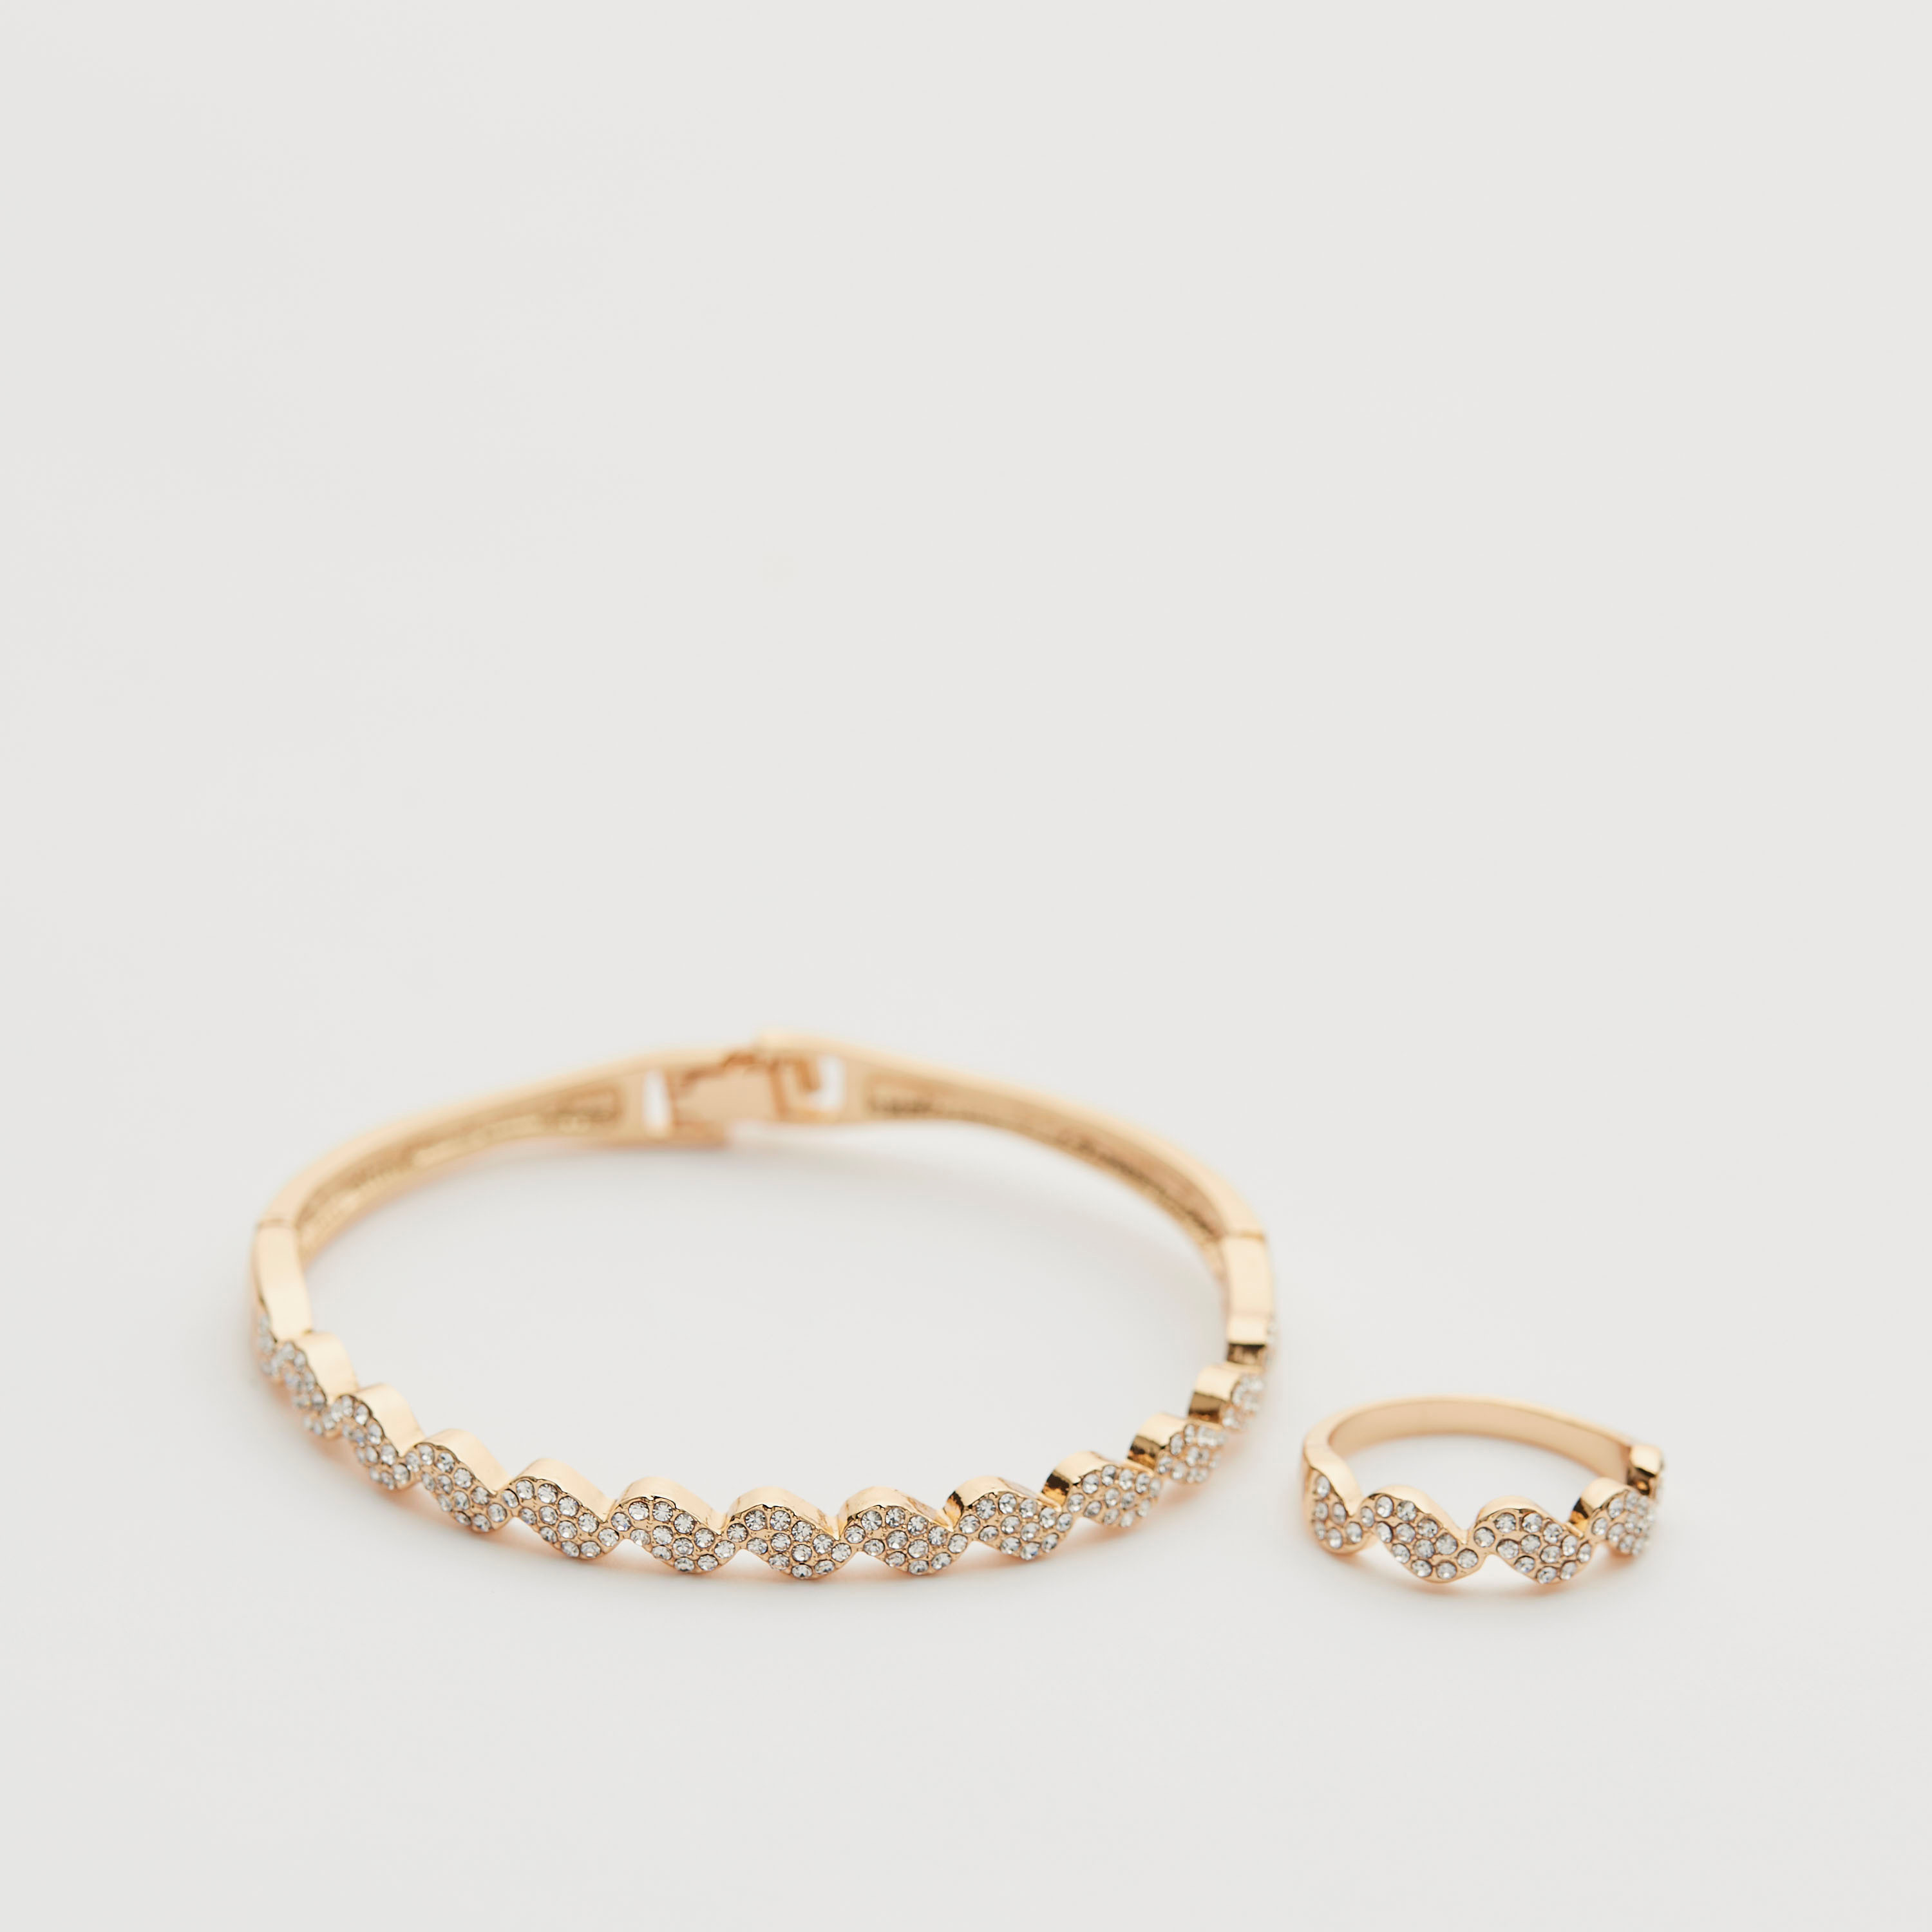 White Gold Ring Bracelet Set On Stock Photo 753730306 | Shutterstock